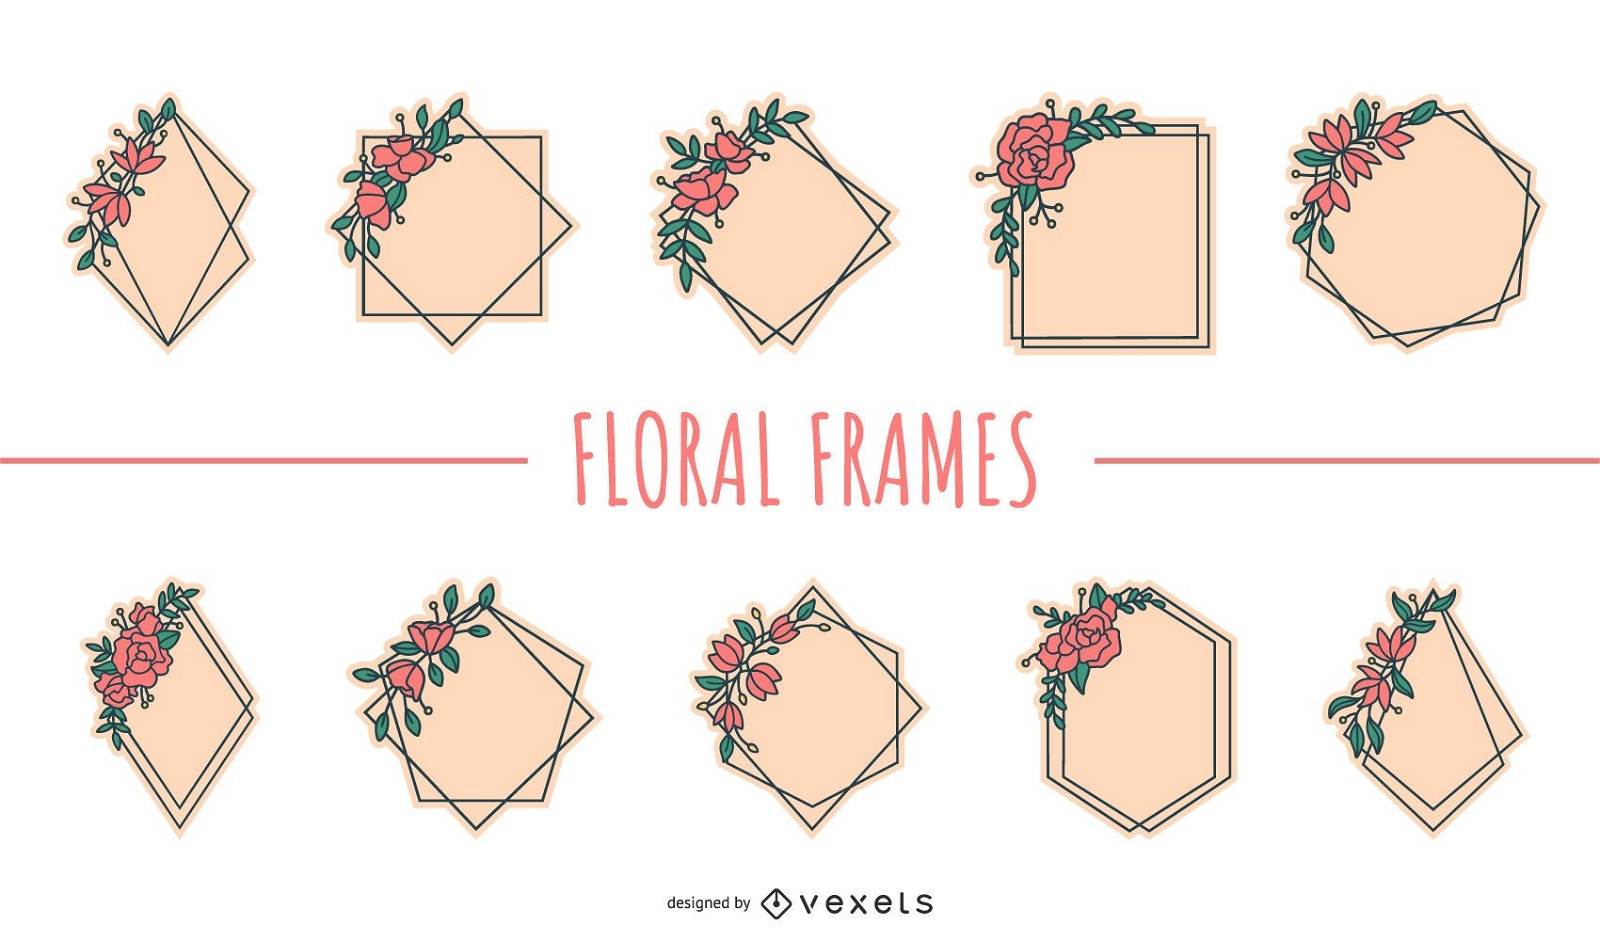 Floral frames flat set